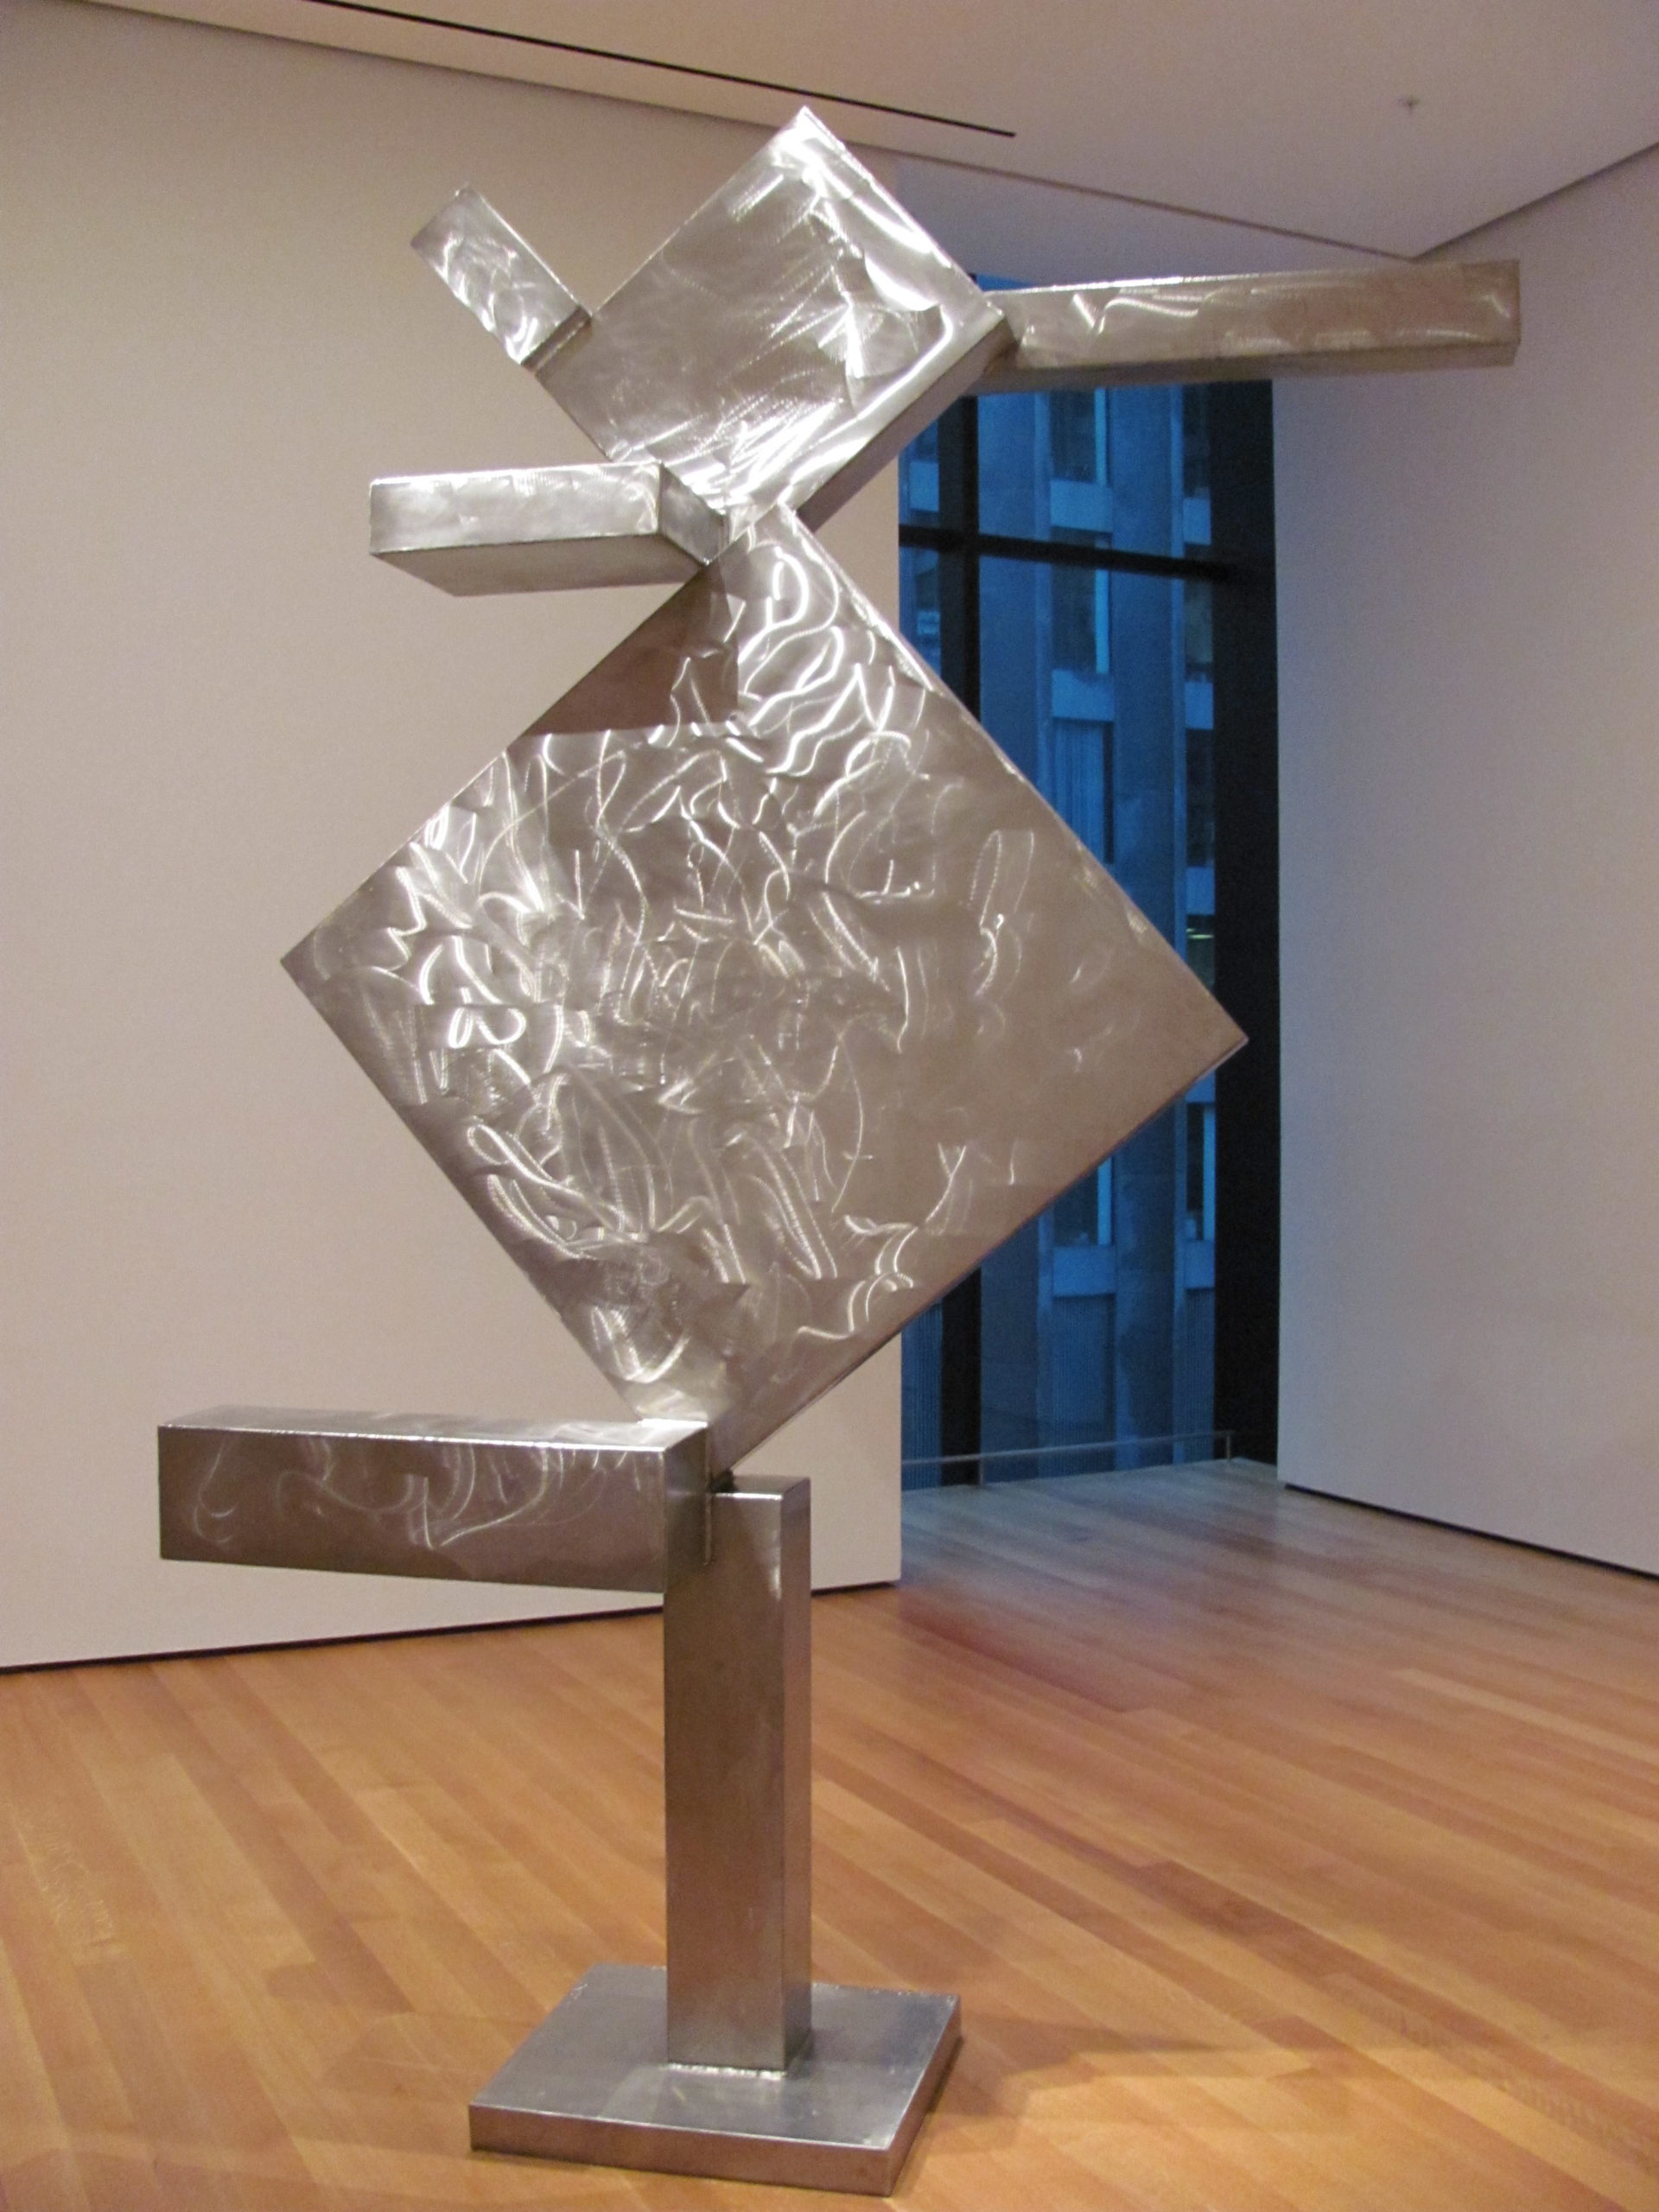 David Smith, Cubi X, 1963, stainless steel, 1308.3 x 199.9 x 61 cm (photo: rocor, CC BY-NC 2.0)